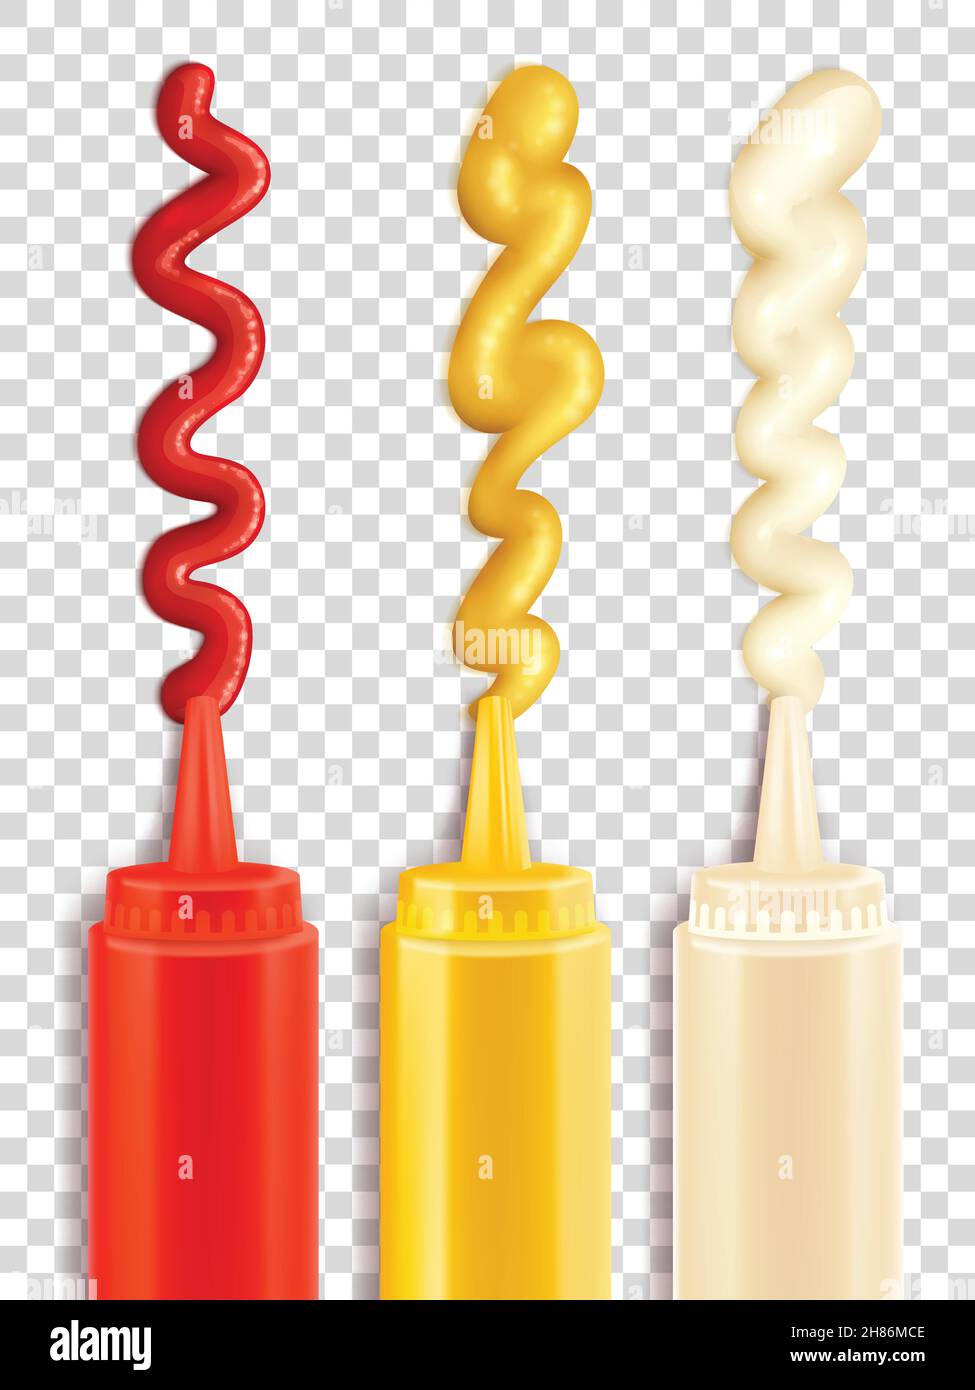 Farbsymbole, die Sauce Flasche mit Streifen von Gewürz Vektor Ilustration Stock Vektor